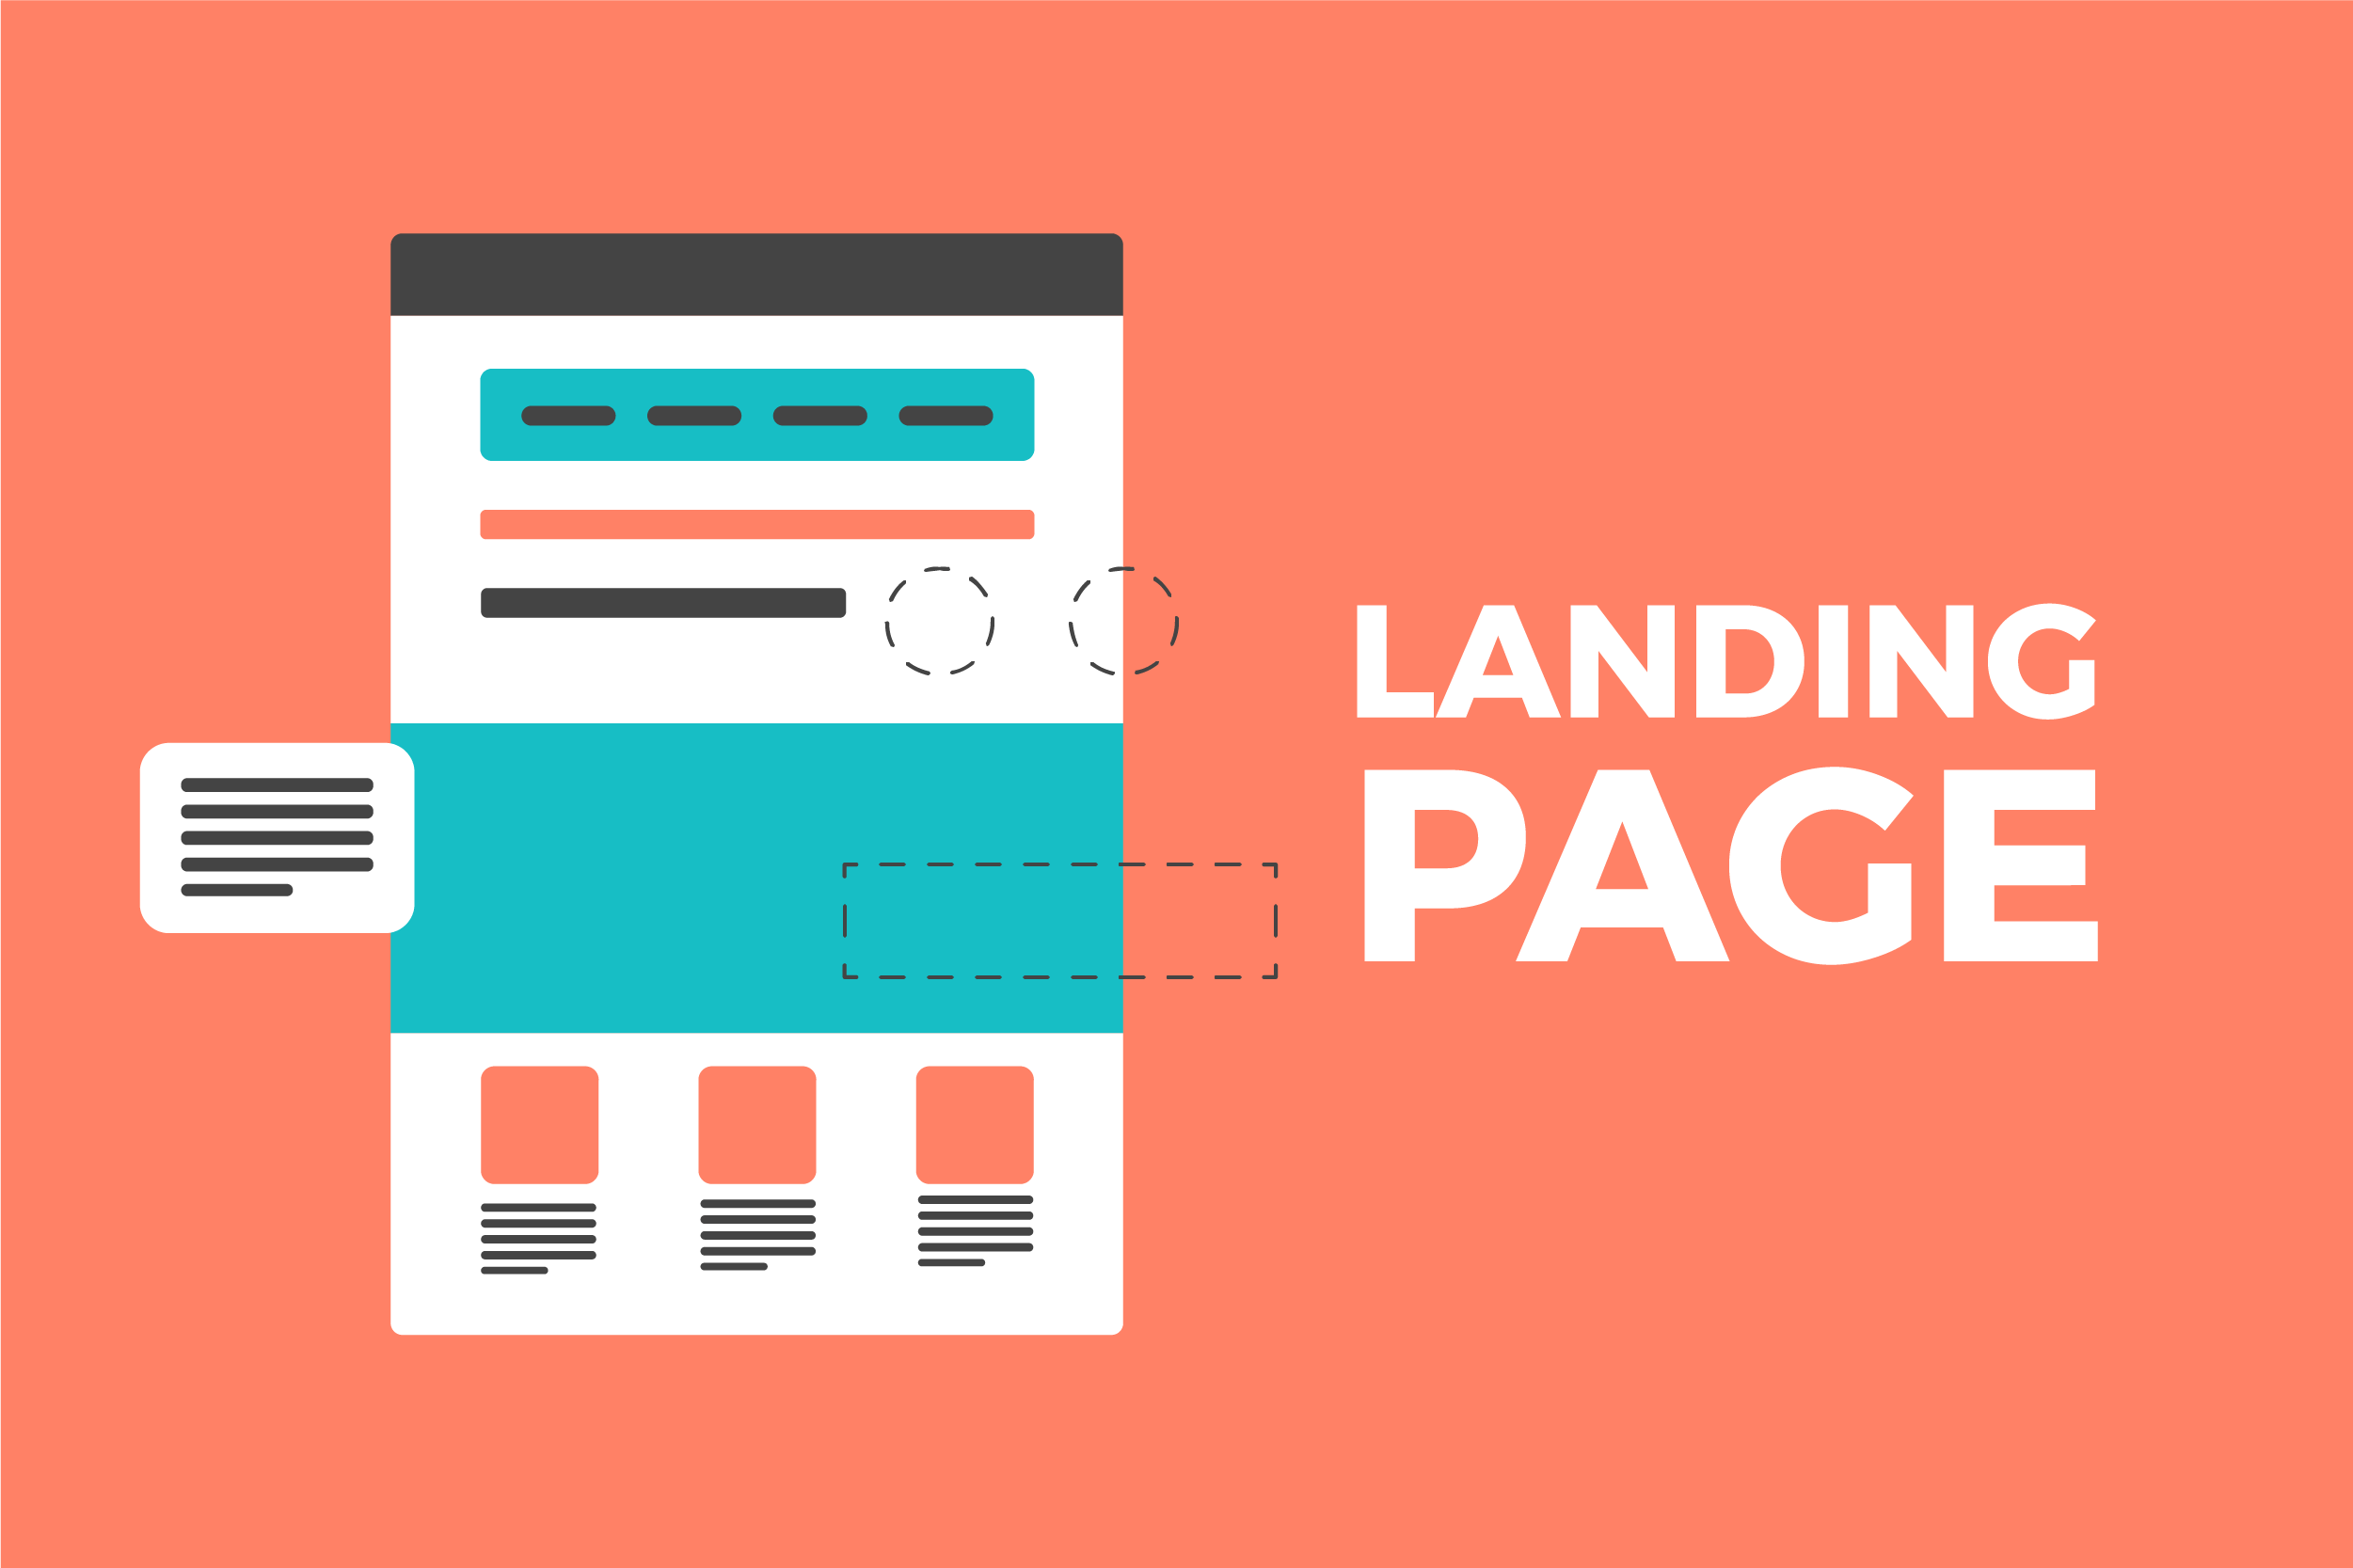 ¿Qué es una landing page?